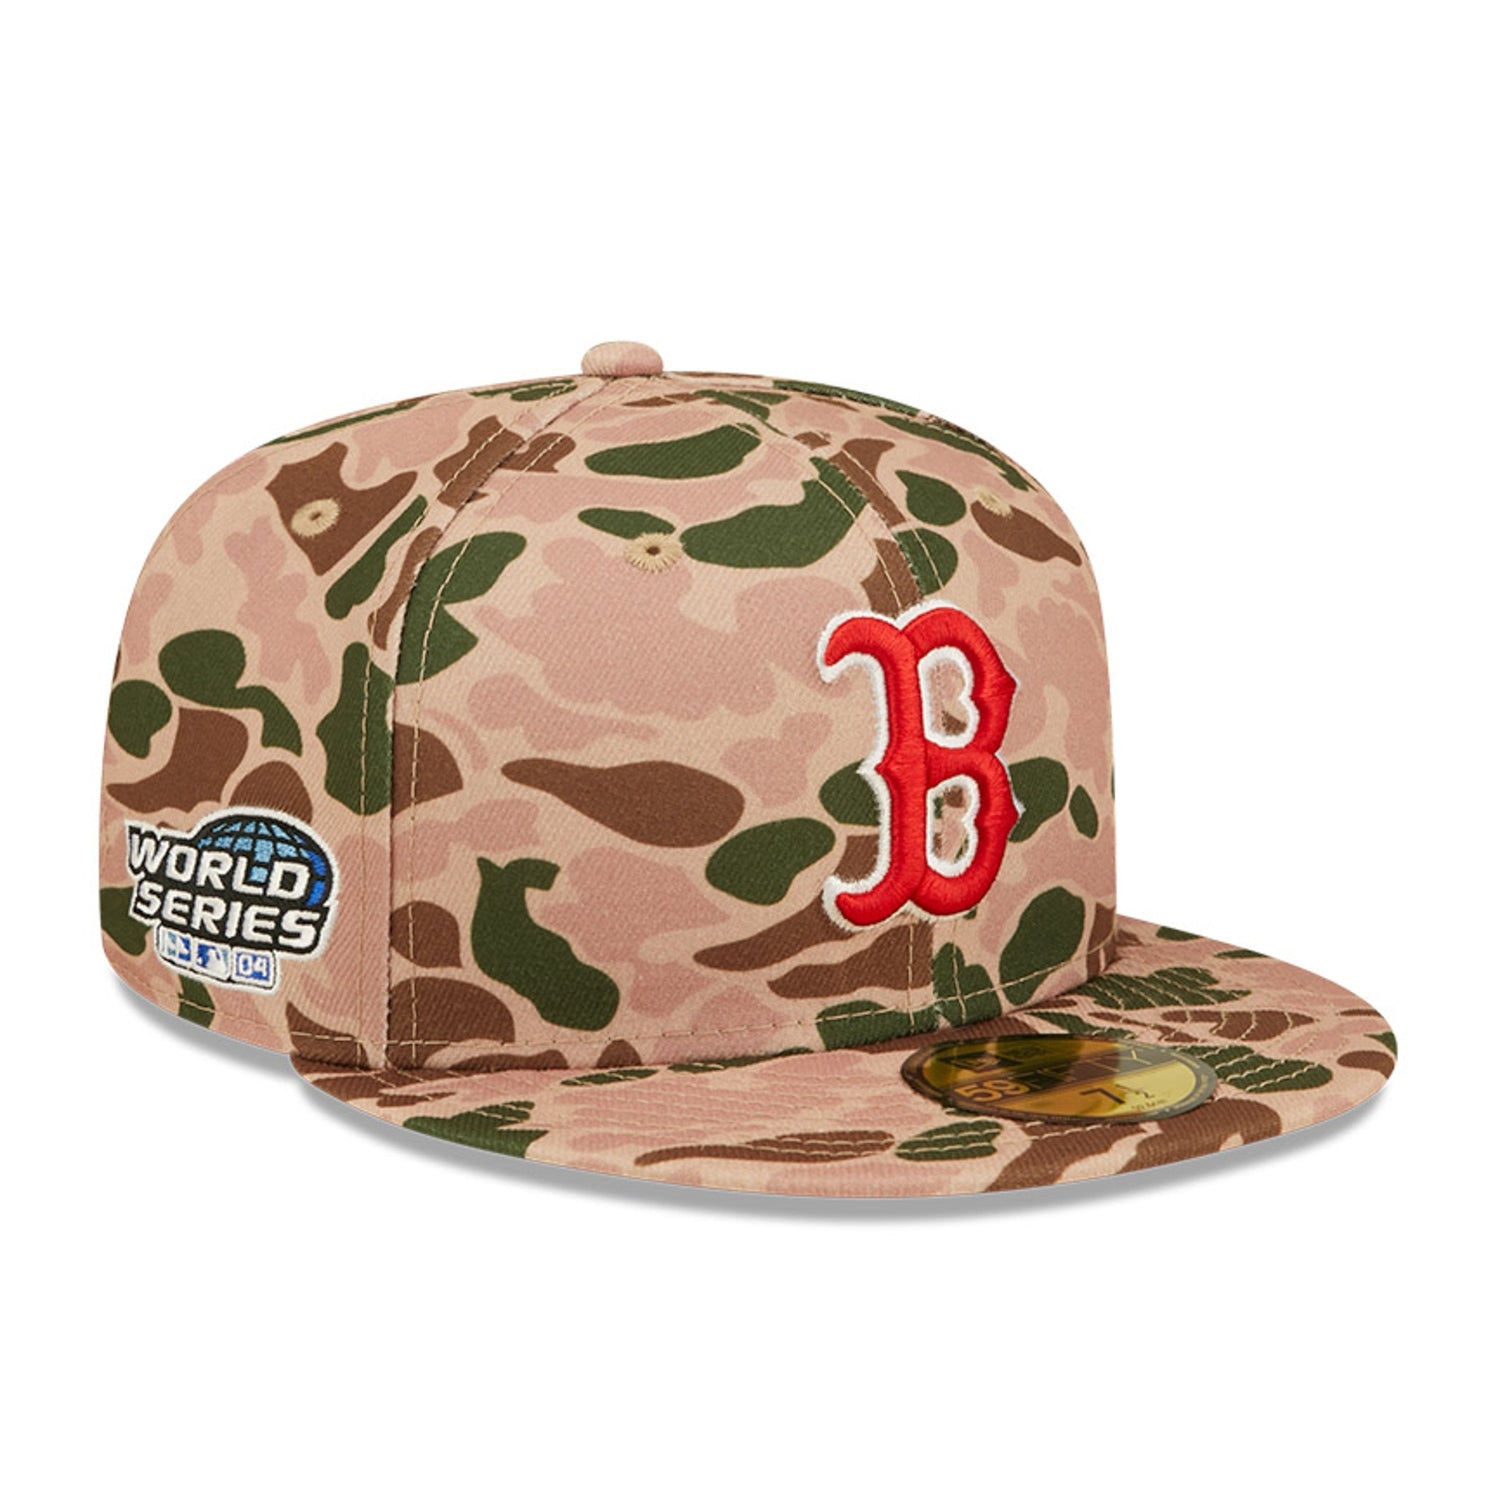 New Era 59FIFTY Duck Camo Boston Red Sox Hat - Camo Camo / 7 1/2